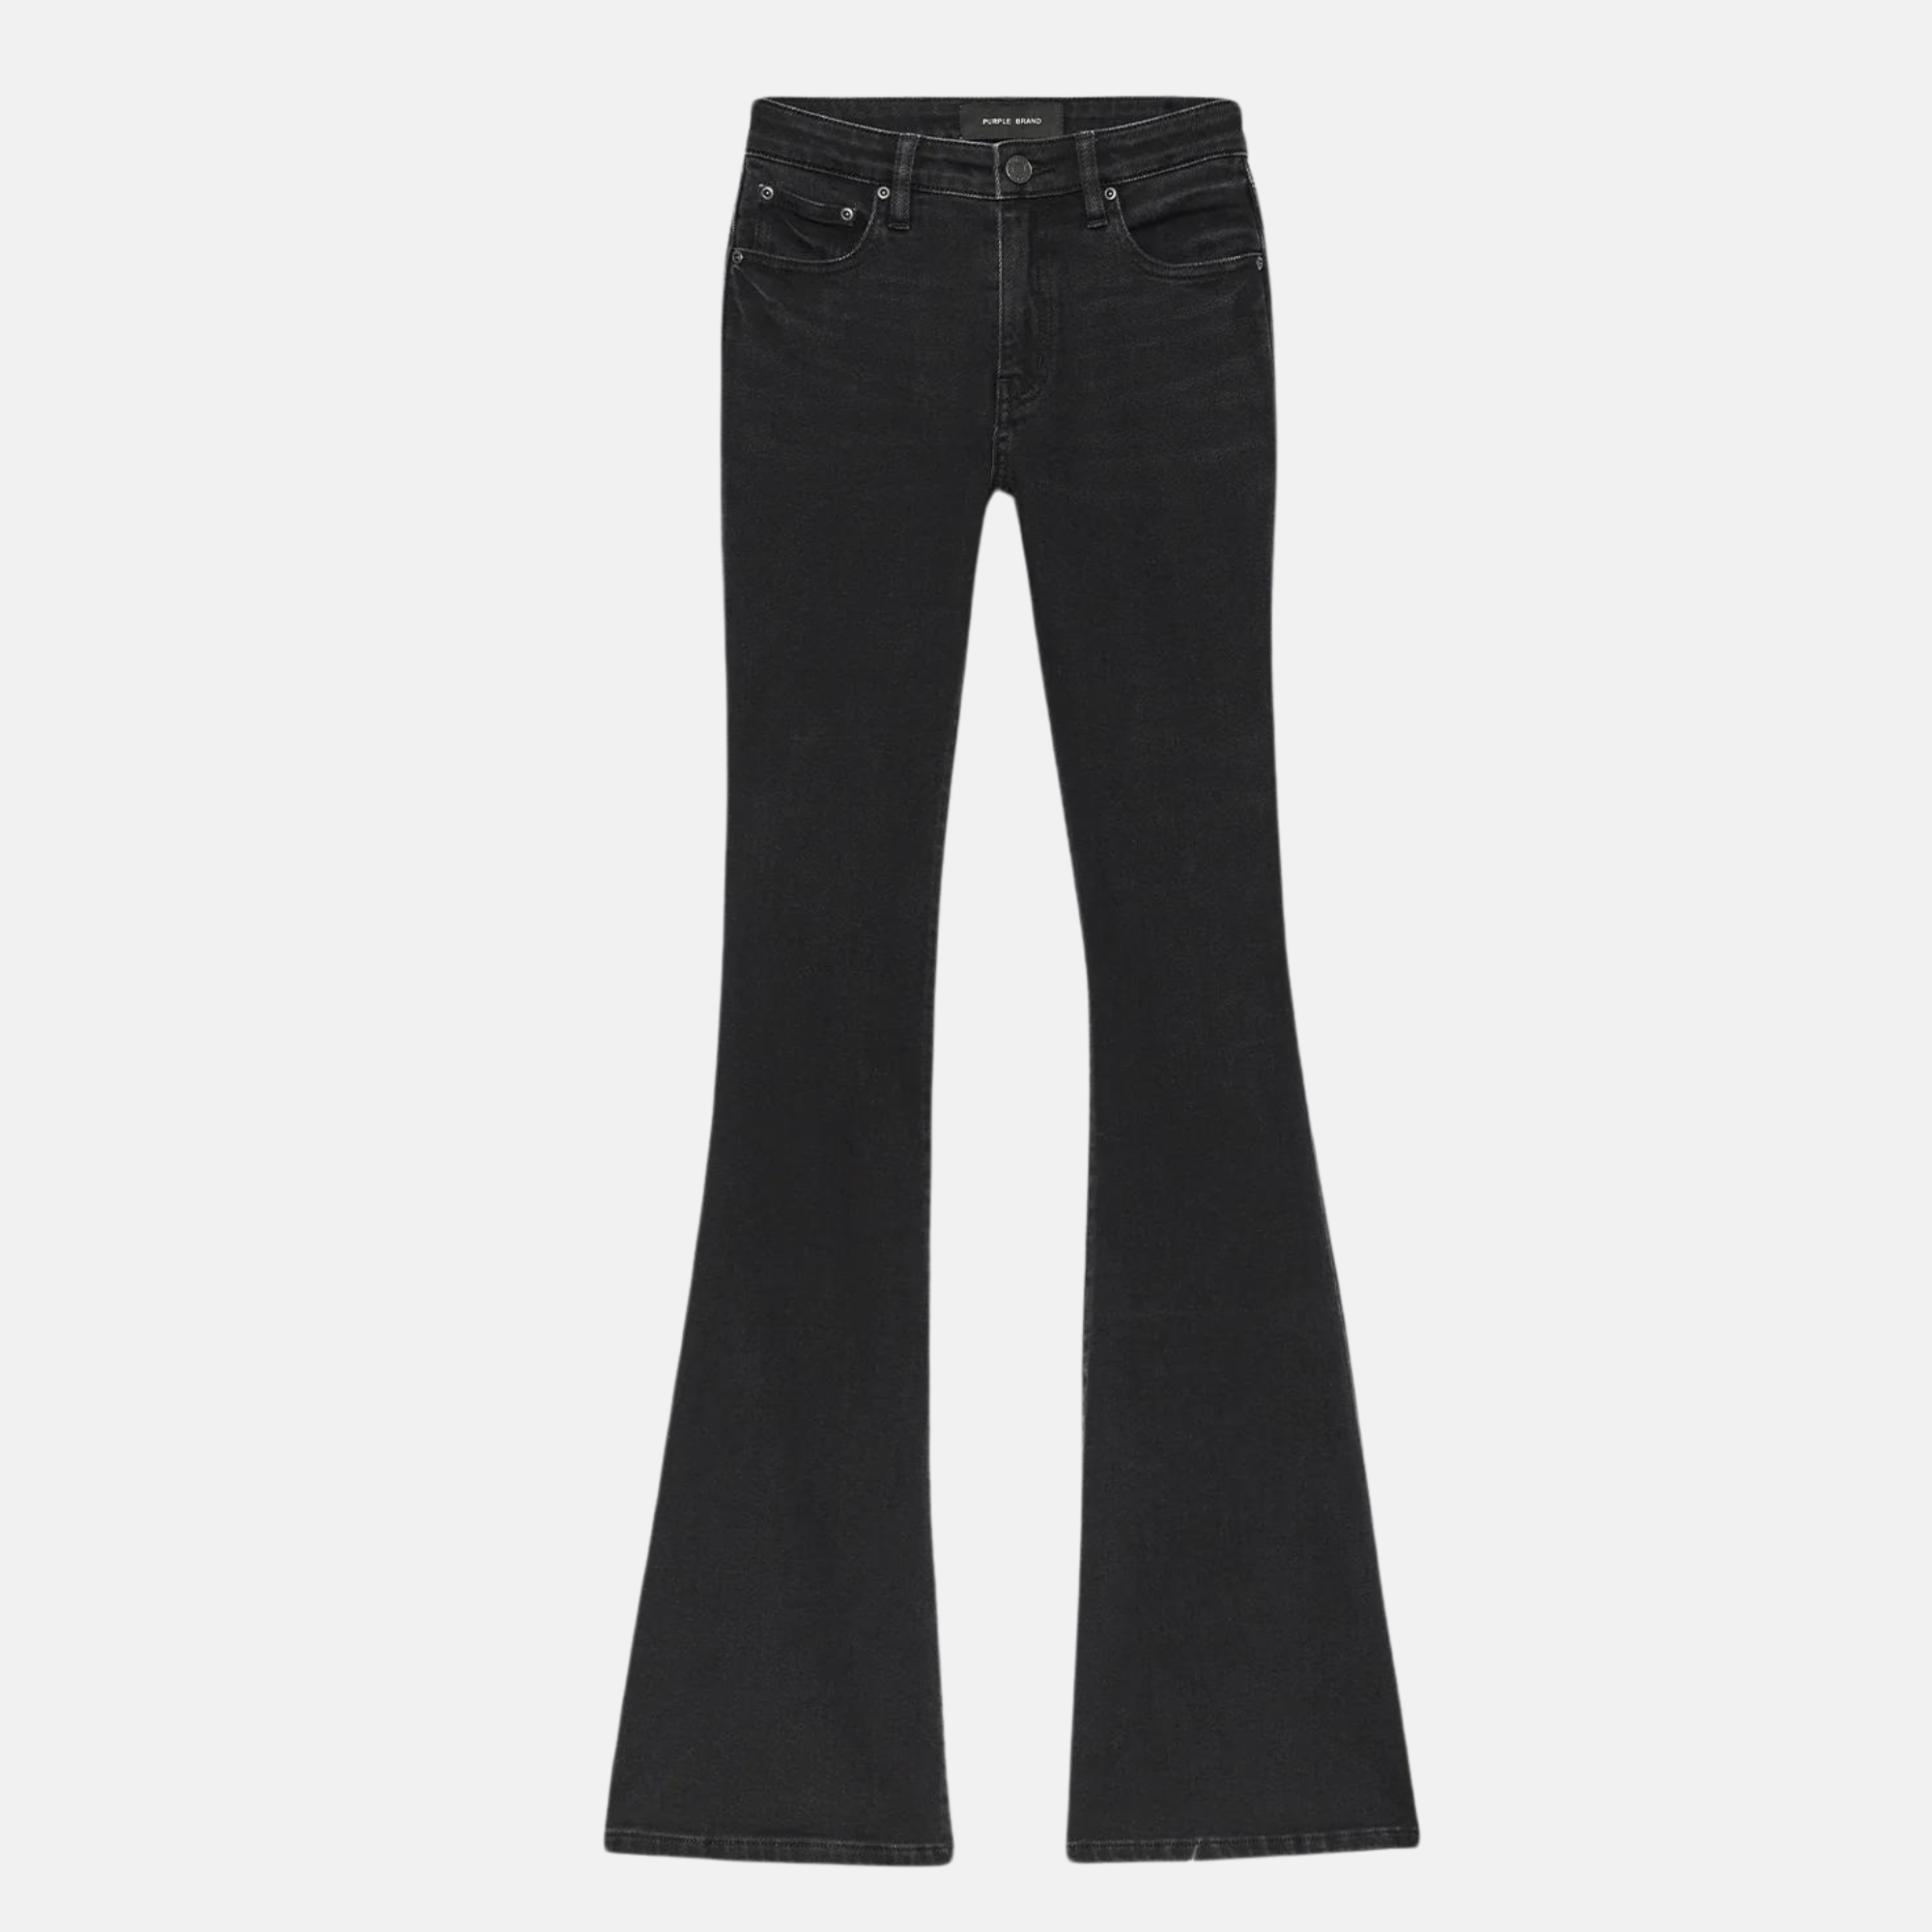 cargo denim pants for women|pocket jeans for women| side pocket straight  jeans for